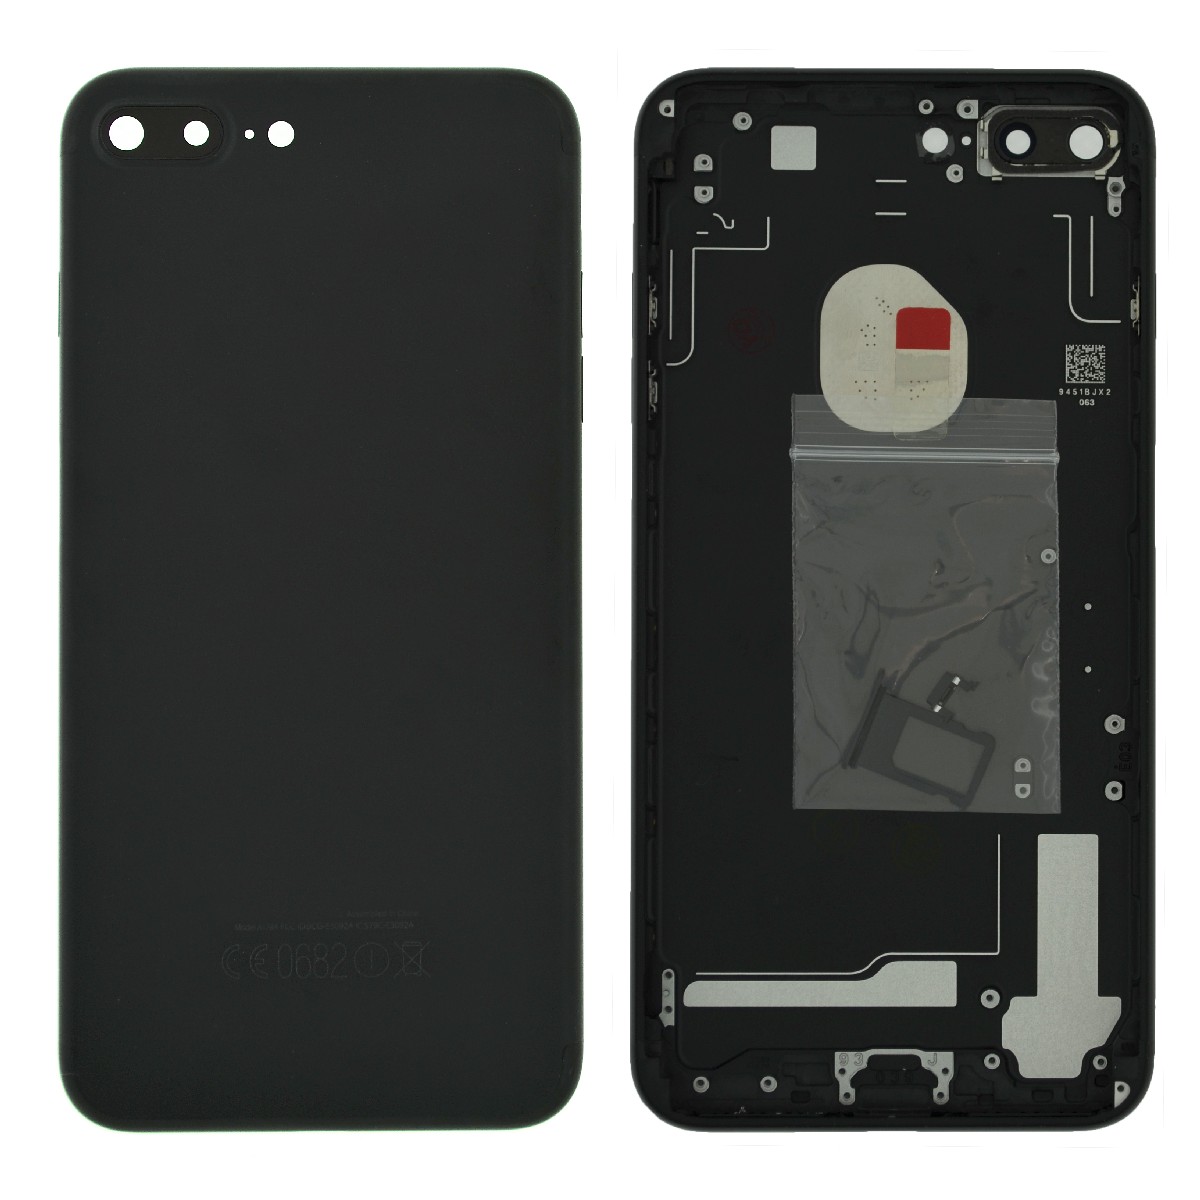 Καπάκι Μπαταρίας με Πλαίσιο για Apple iPhone 7 Plus Χρυσαφί με Τζαμάκι Κάμερας, Θύρα SIM και Εξωτερικά Πλήκτρα OEM Type A